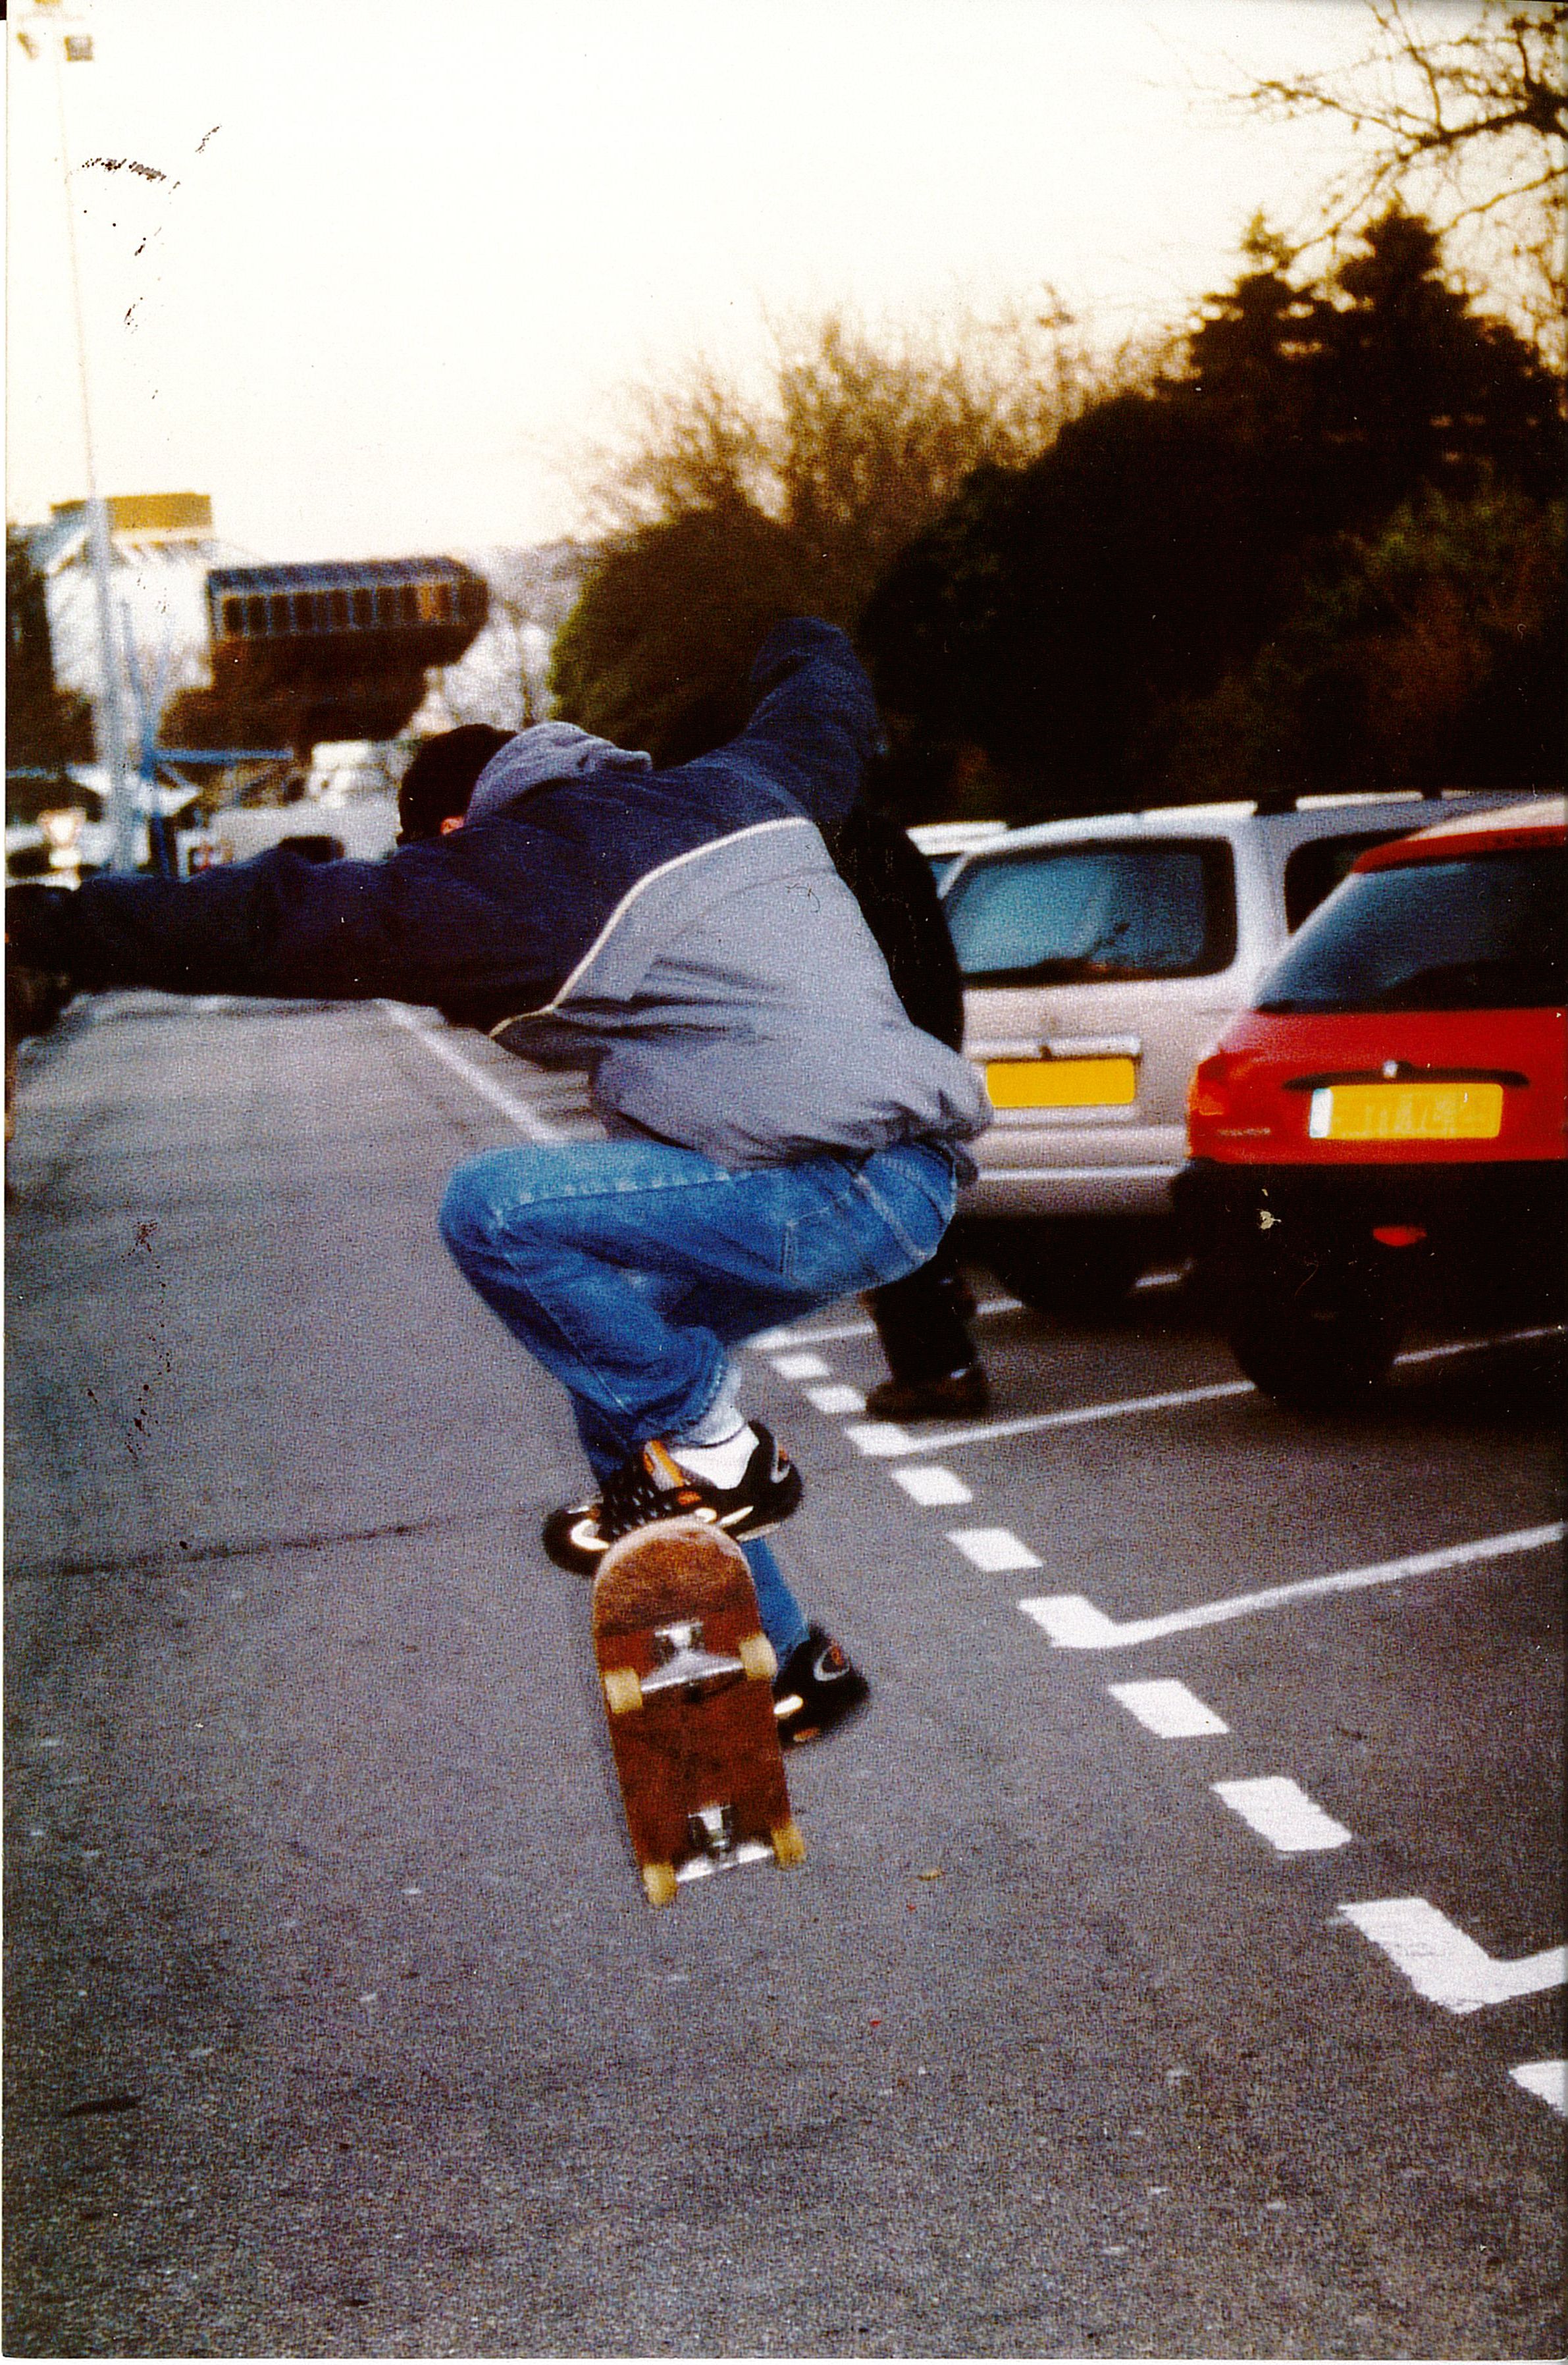 Claire Calogirou, Photographie d’un skateur à Brest, Janvier 2000, Mucem